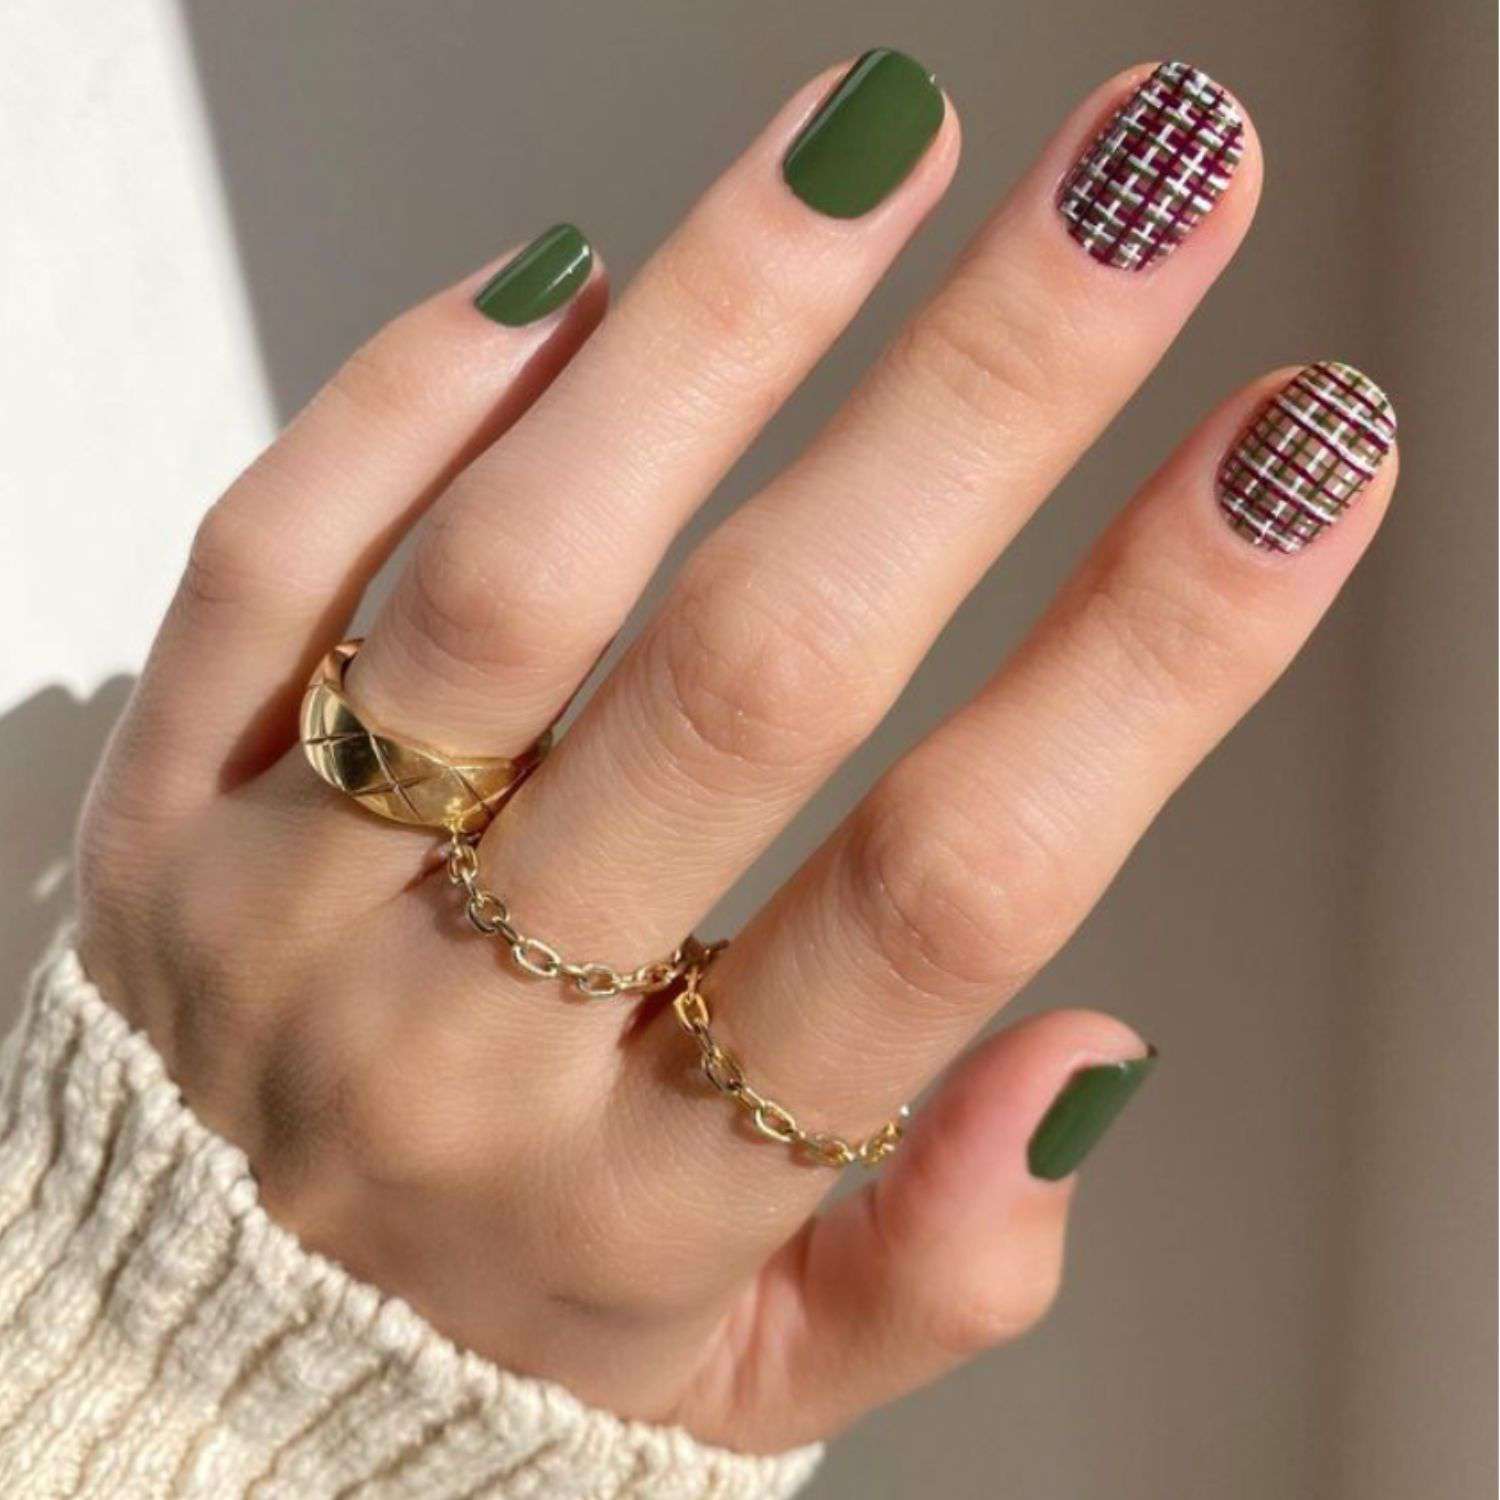 Manicure verde com unhas multicoloridas em xadrez neutro